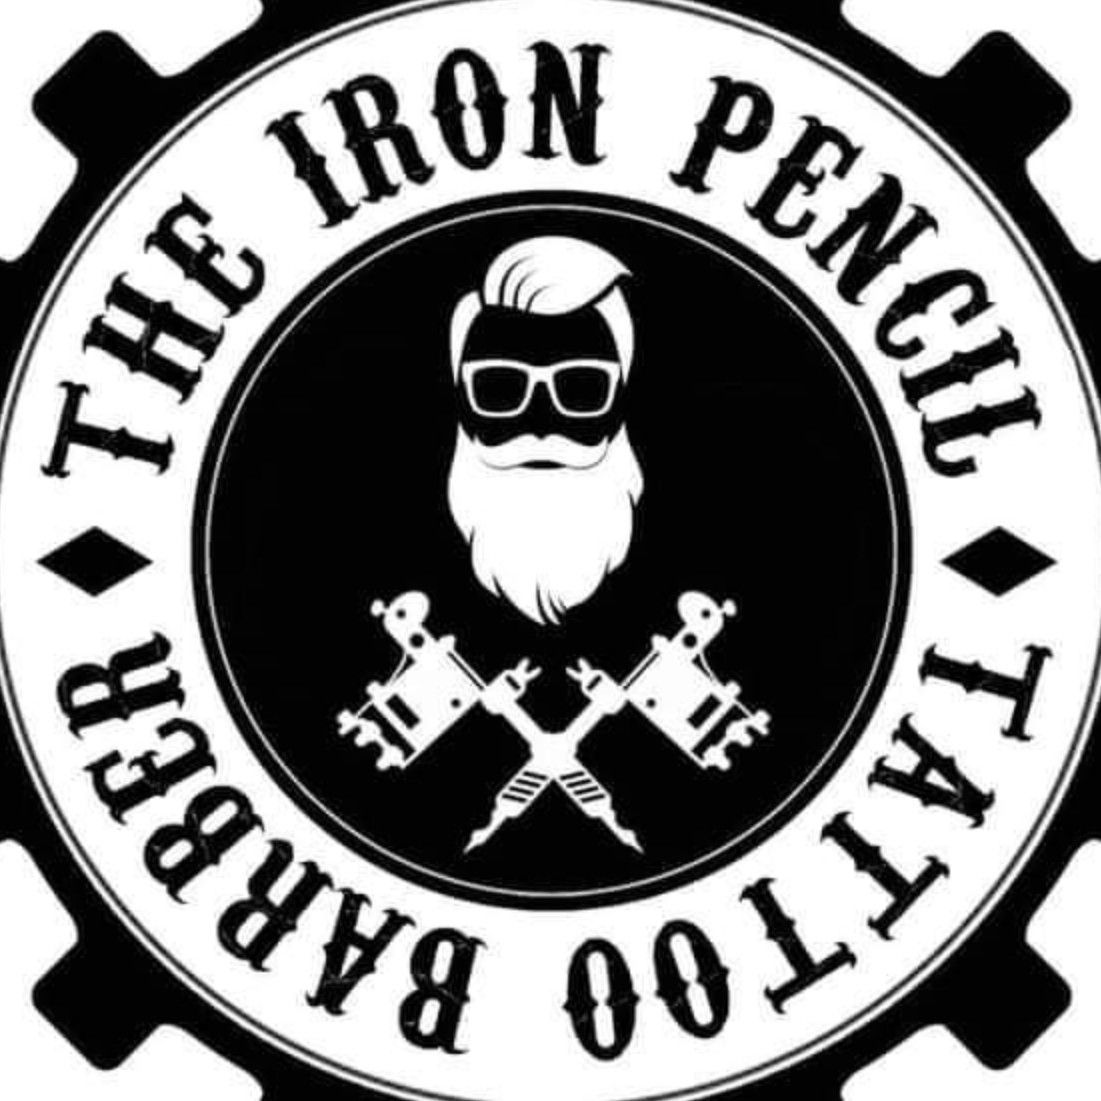 The Iron Pencil Barber, 14 Abbey Meadows, NE61 2BD, Morpeth